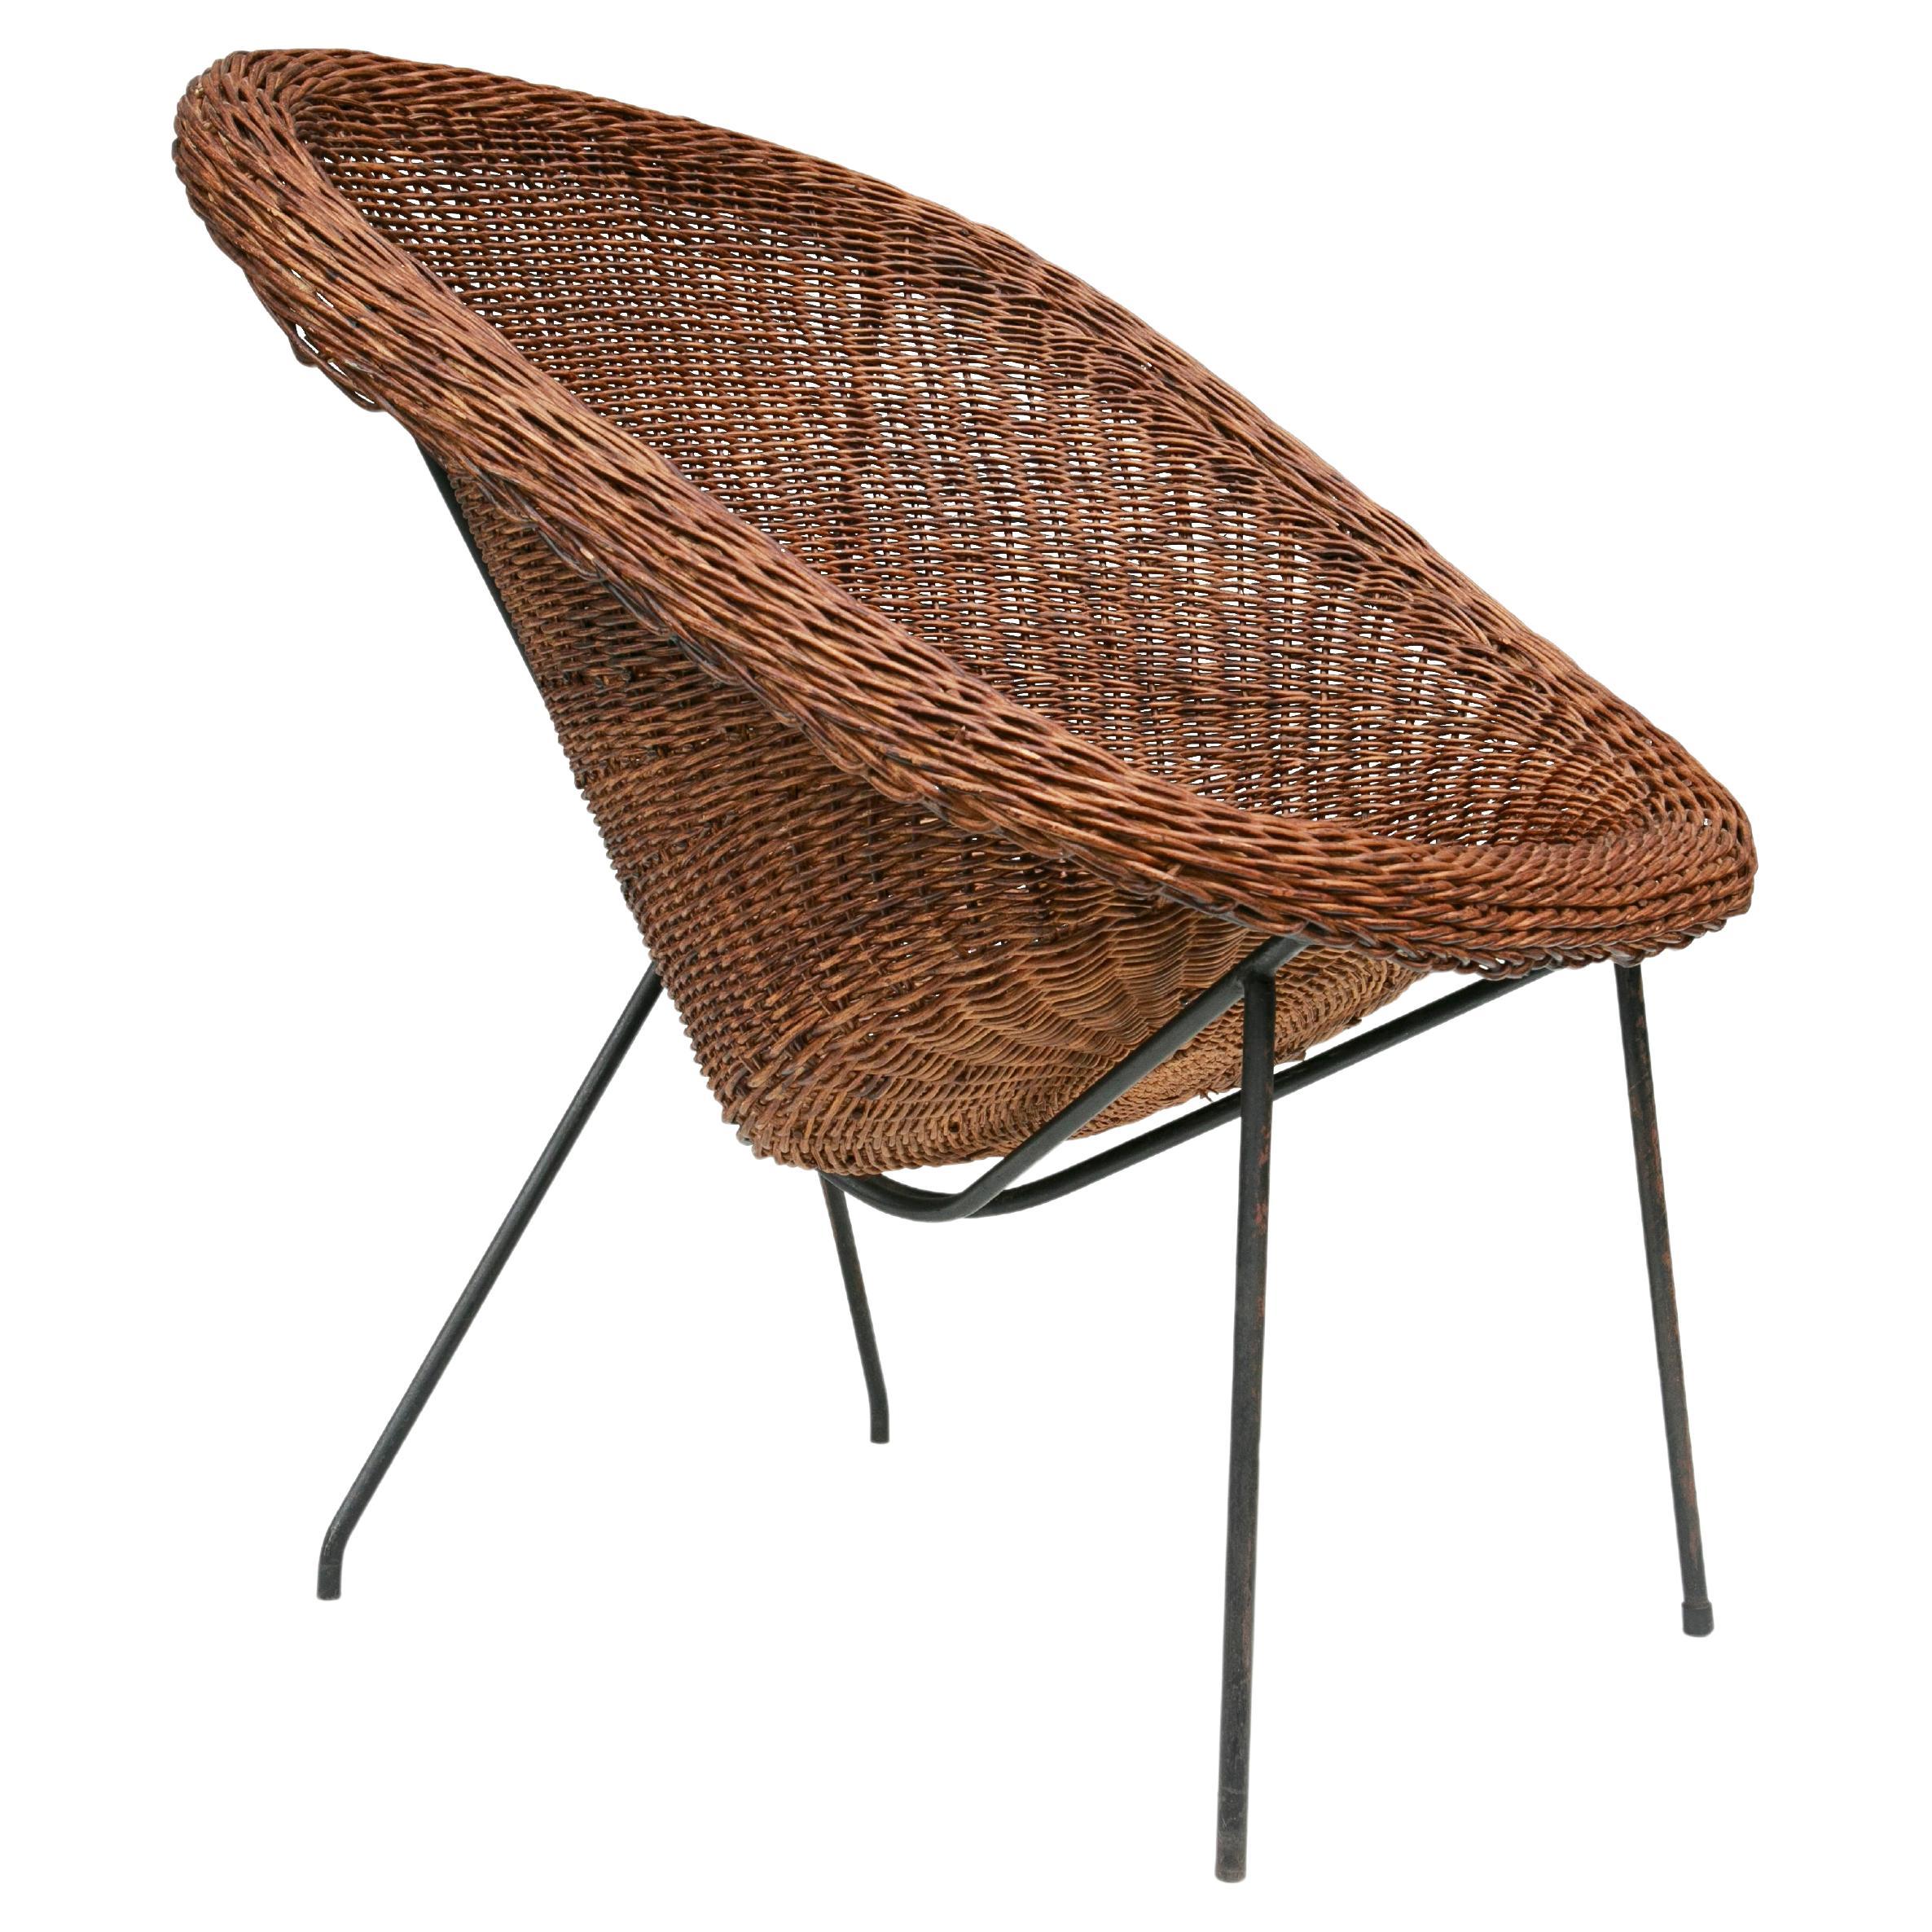 Brasilianischer moderner Stuhl aus Schilfrohr und Eisen von Carlo Hauner & Martin Eisler, 1955